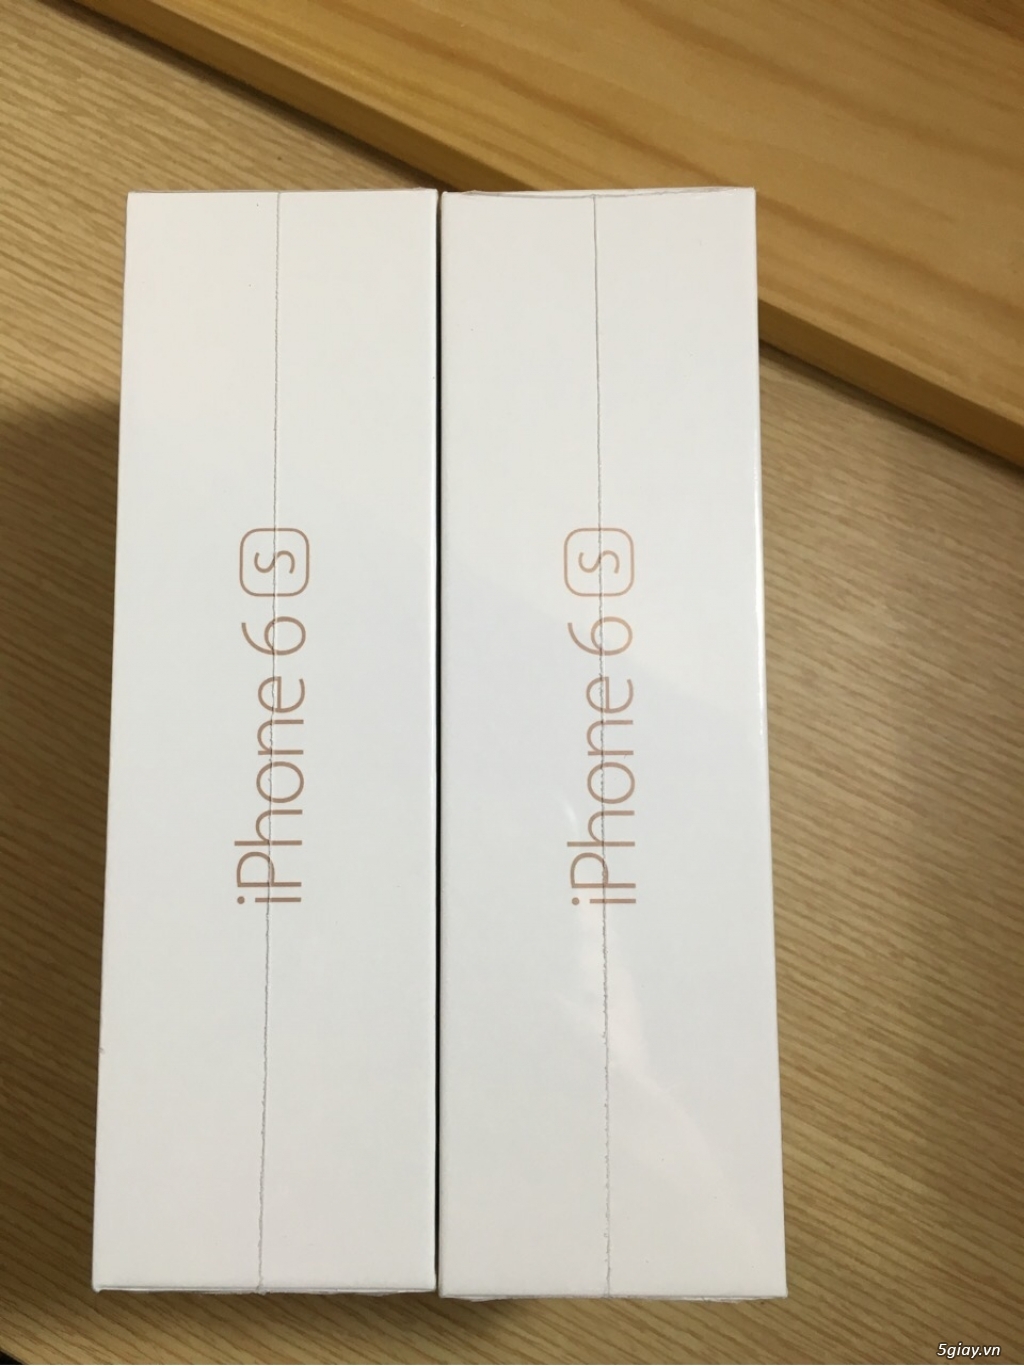 Iphone 6s 128gb màu rose gold hàng xách tay Úc sealed